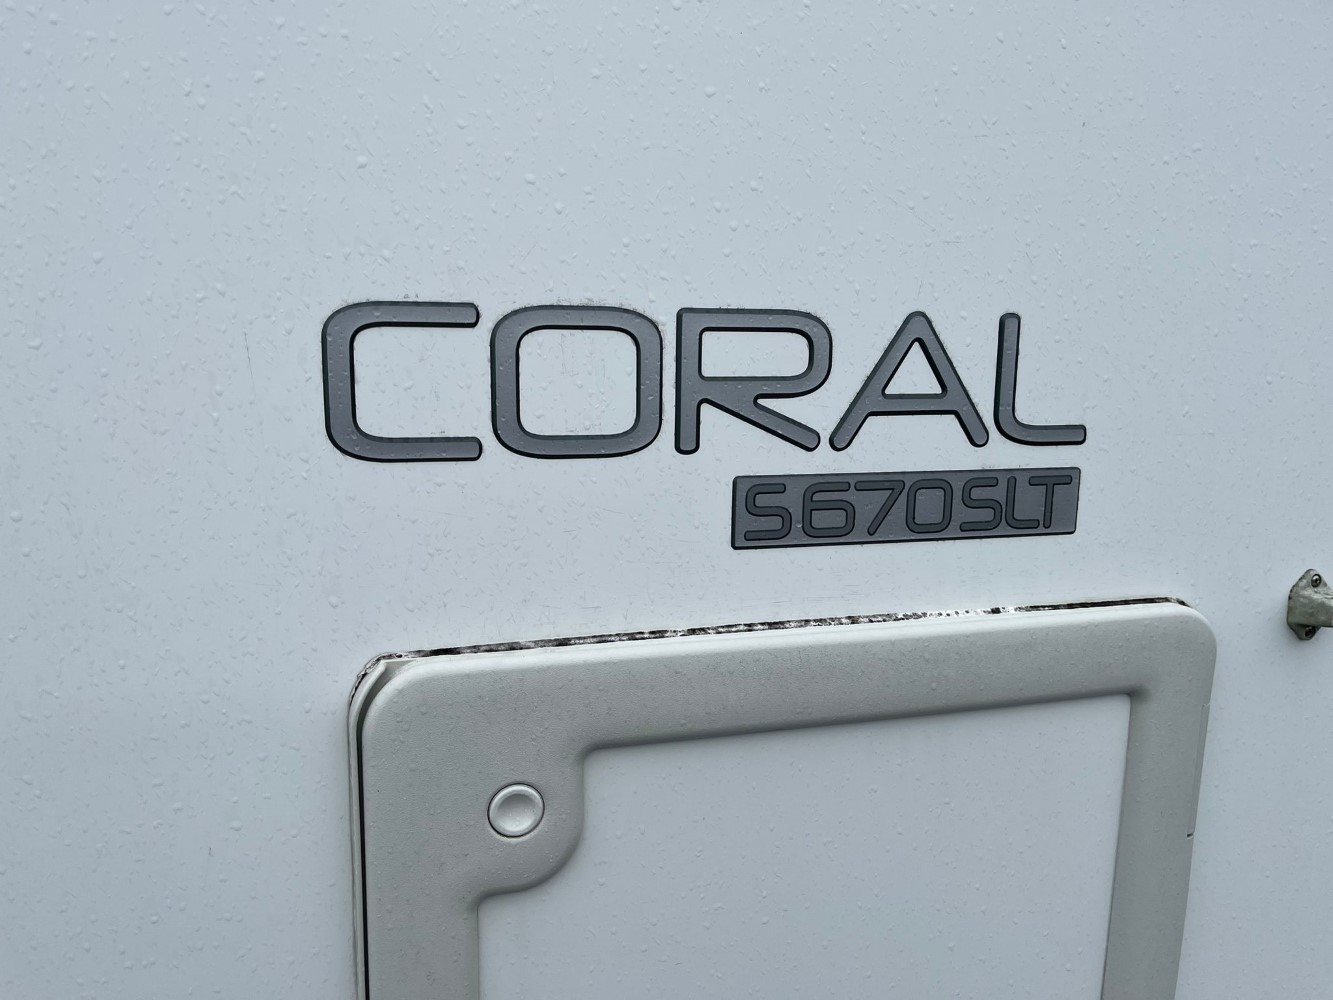 Adria Coral 670 SLT